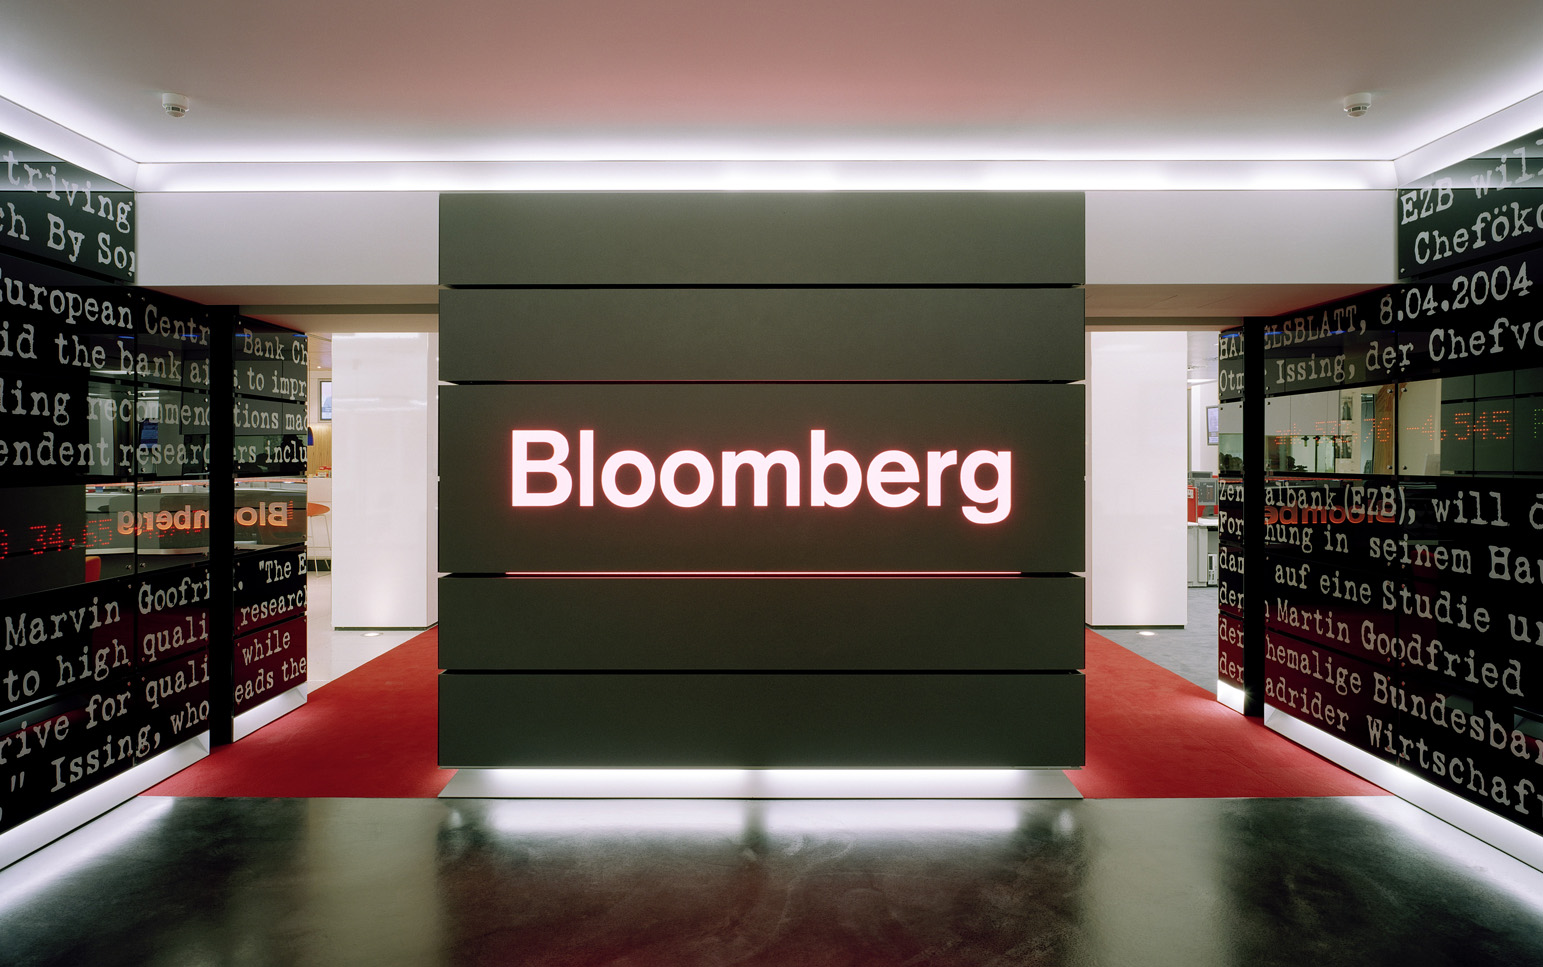 Bloomberg останавливает работу в России и Беларуси